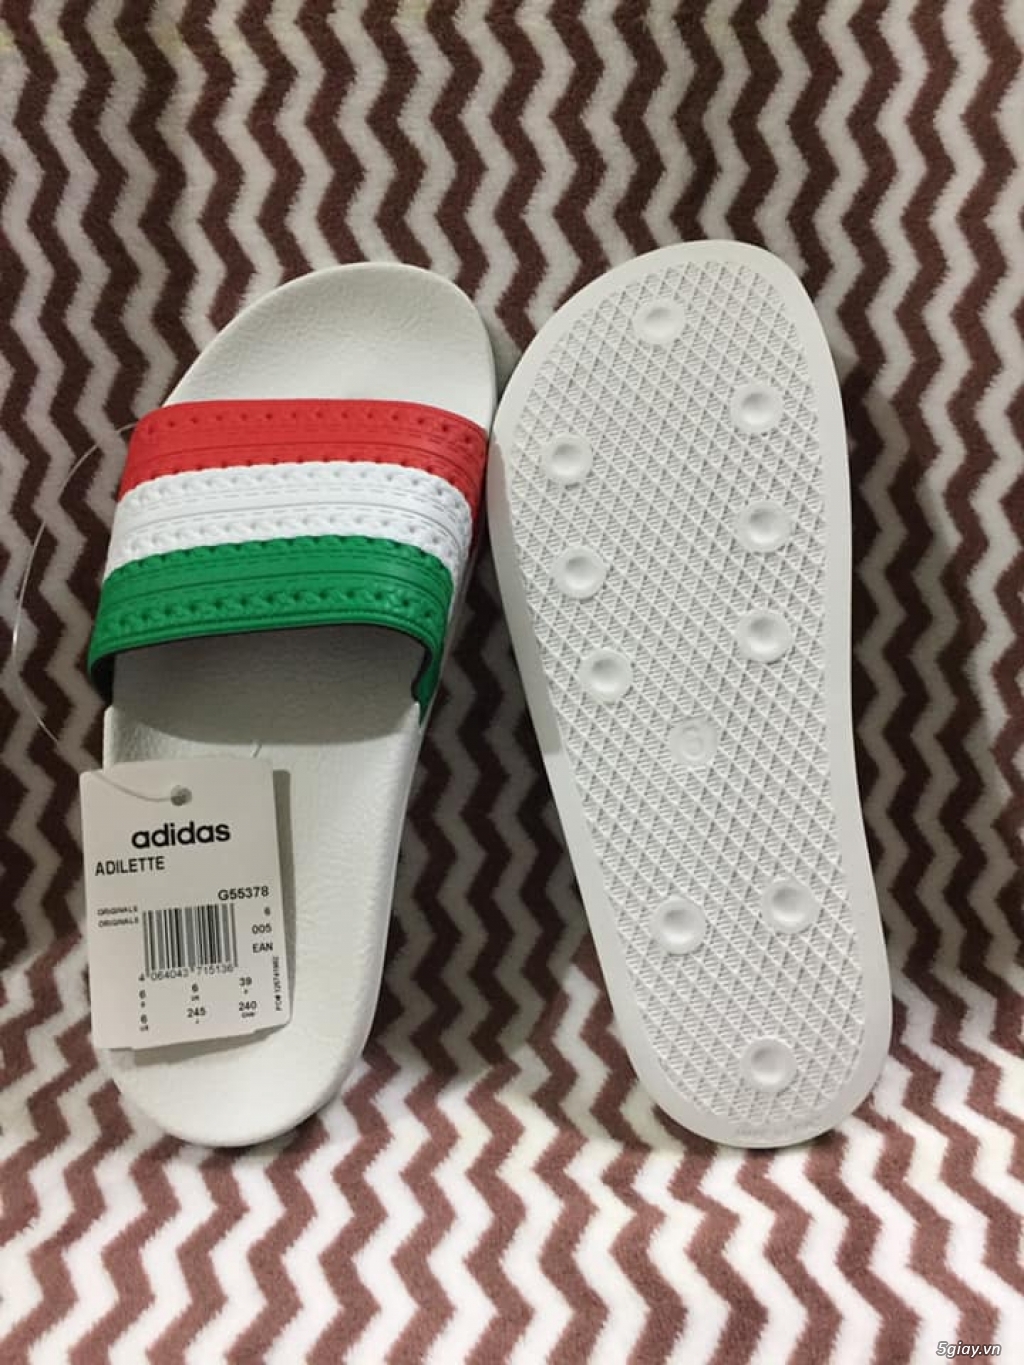 Dép bánh mì Adidas cờ Ý đế trắng chính hãng - 1